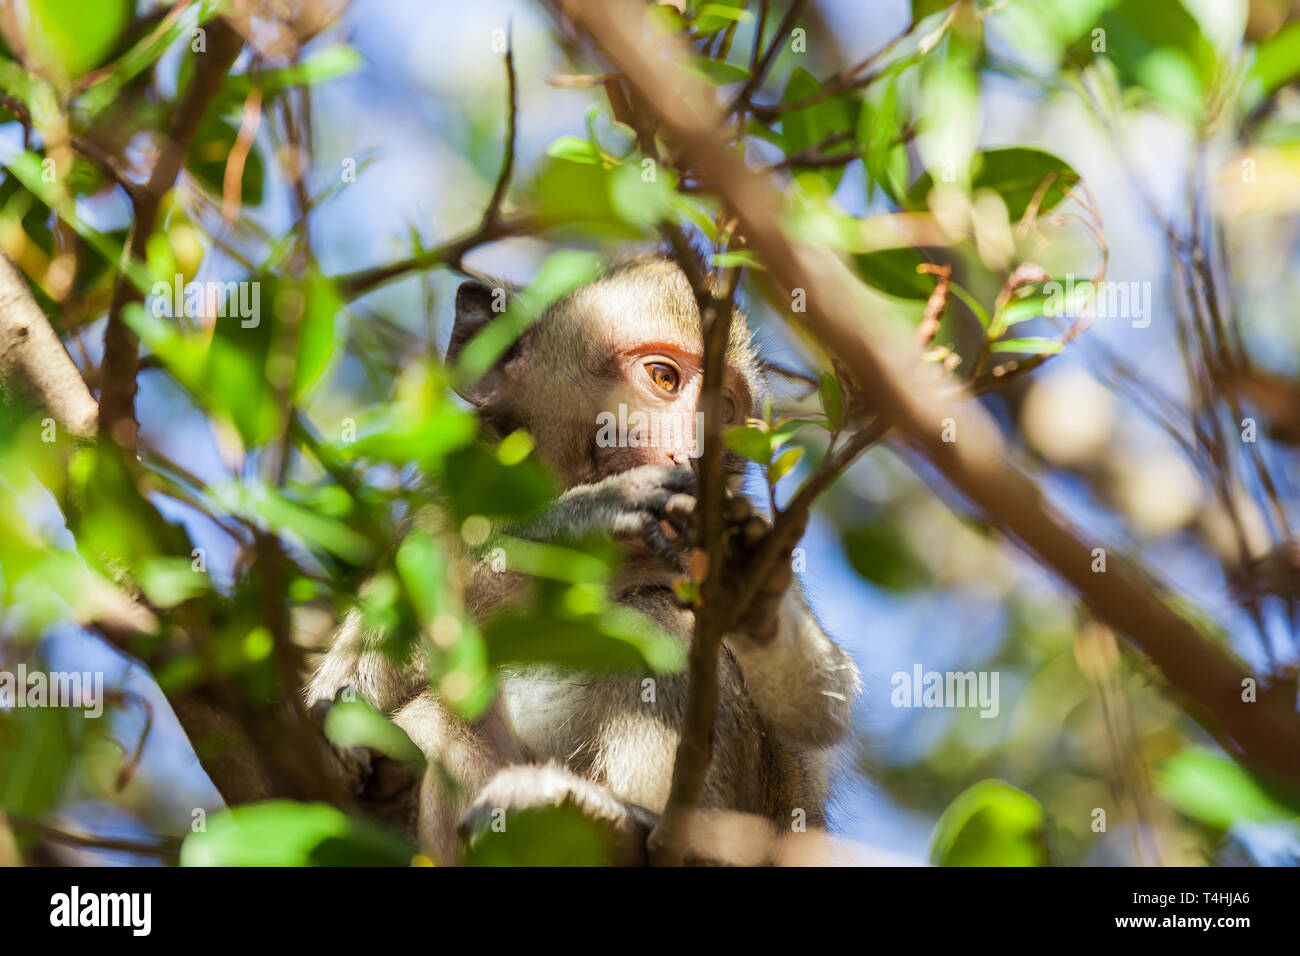 Scimmia rhesus in un albero dietro i rametti e foglie Foto Stock